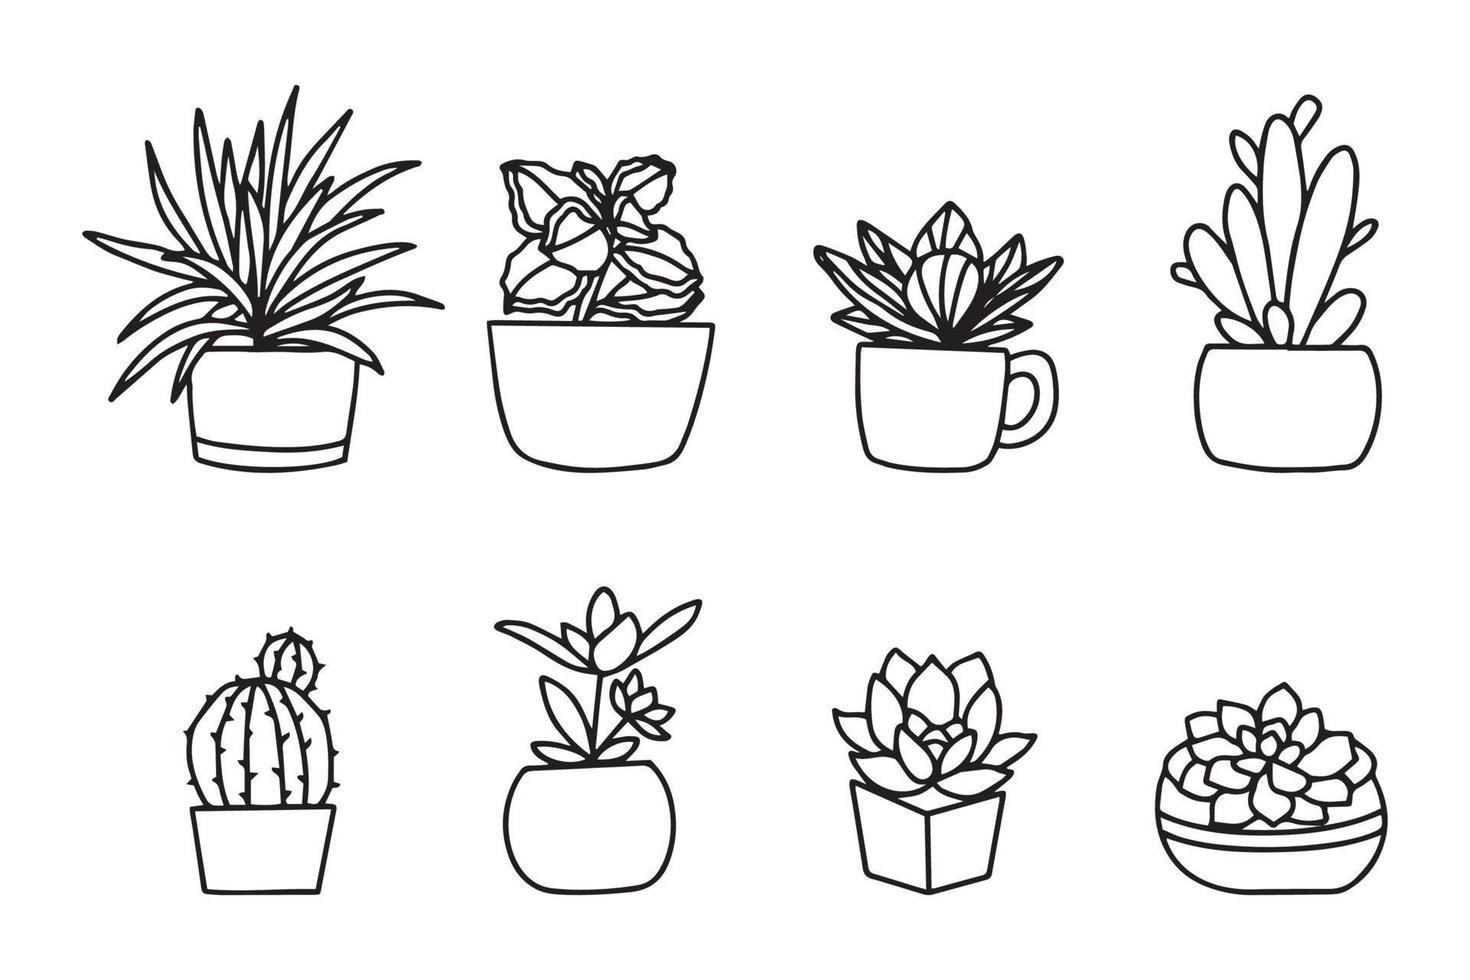 cactus disegnato a mano in vaso isolato su priorità bassa bianca. collezione di disegni vettoriali